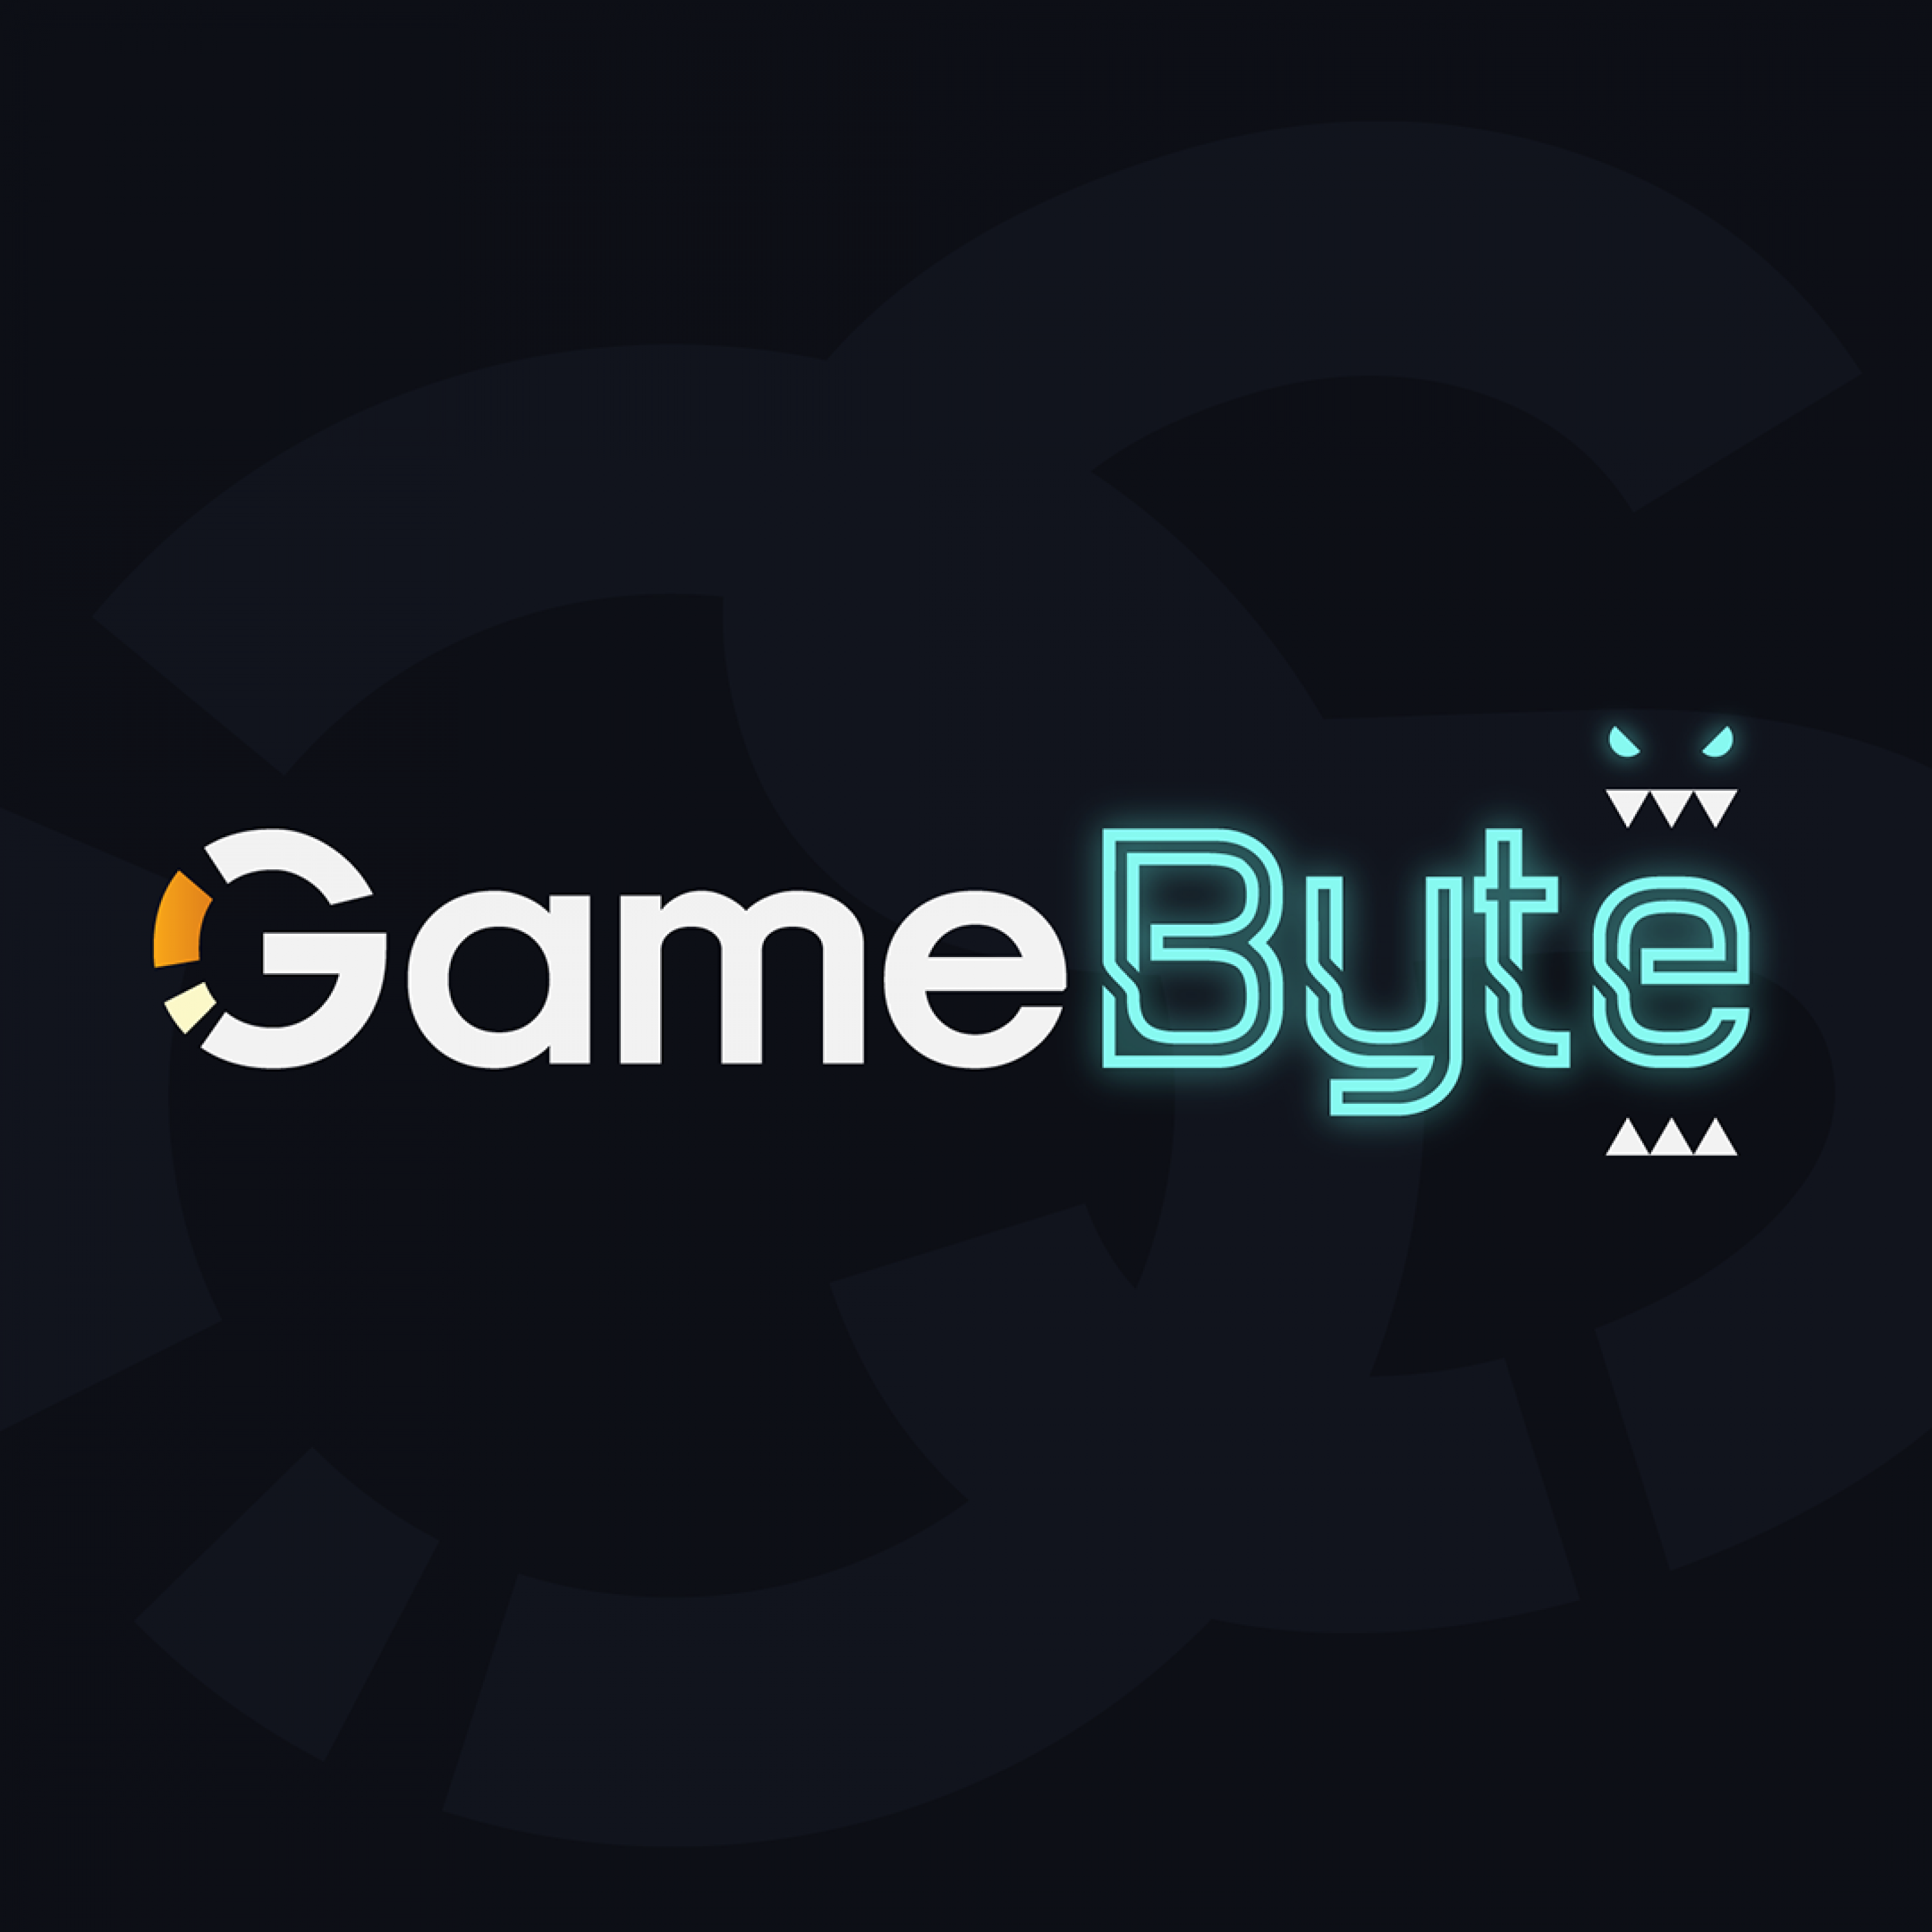 GameByte 128 - Asurai Gives Shoutcasting Wisdom